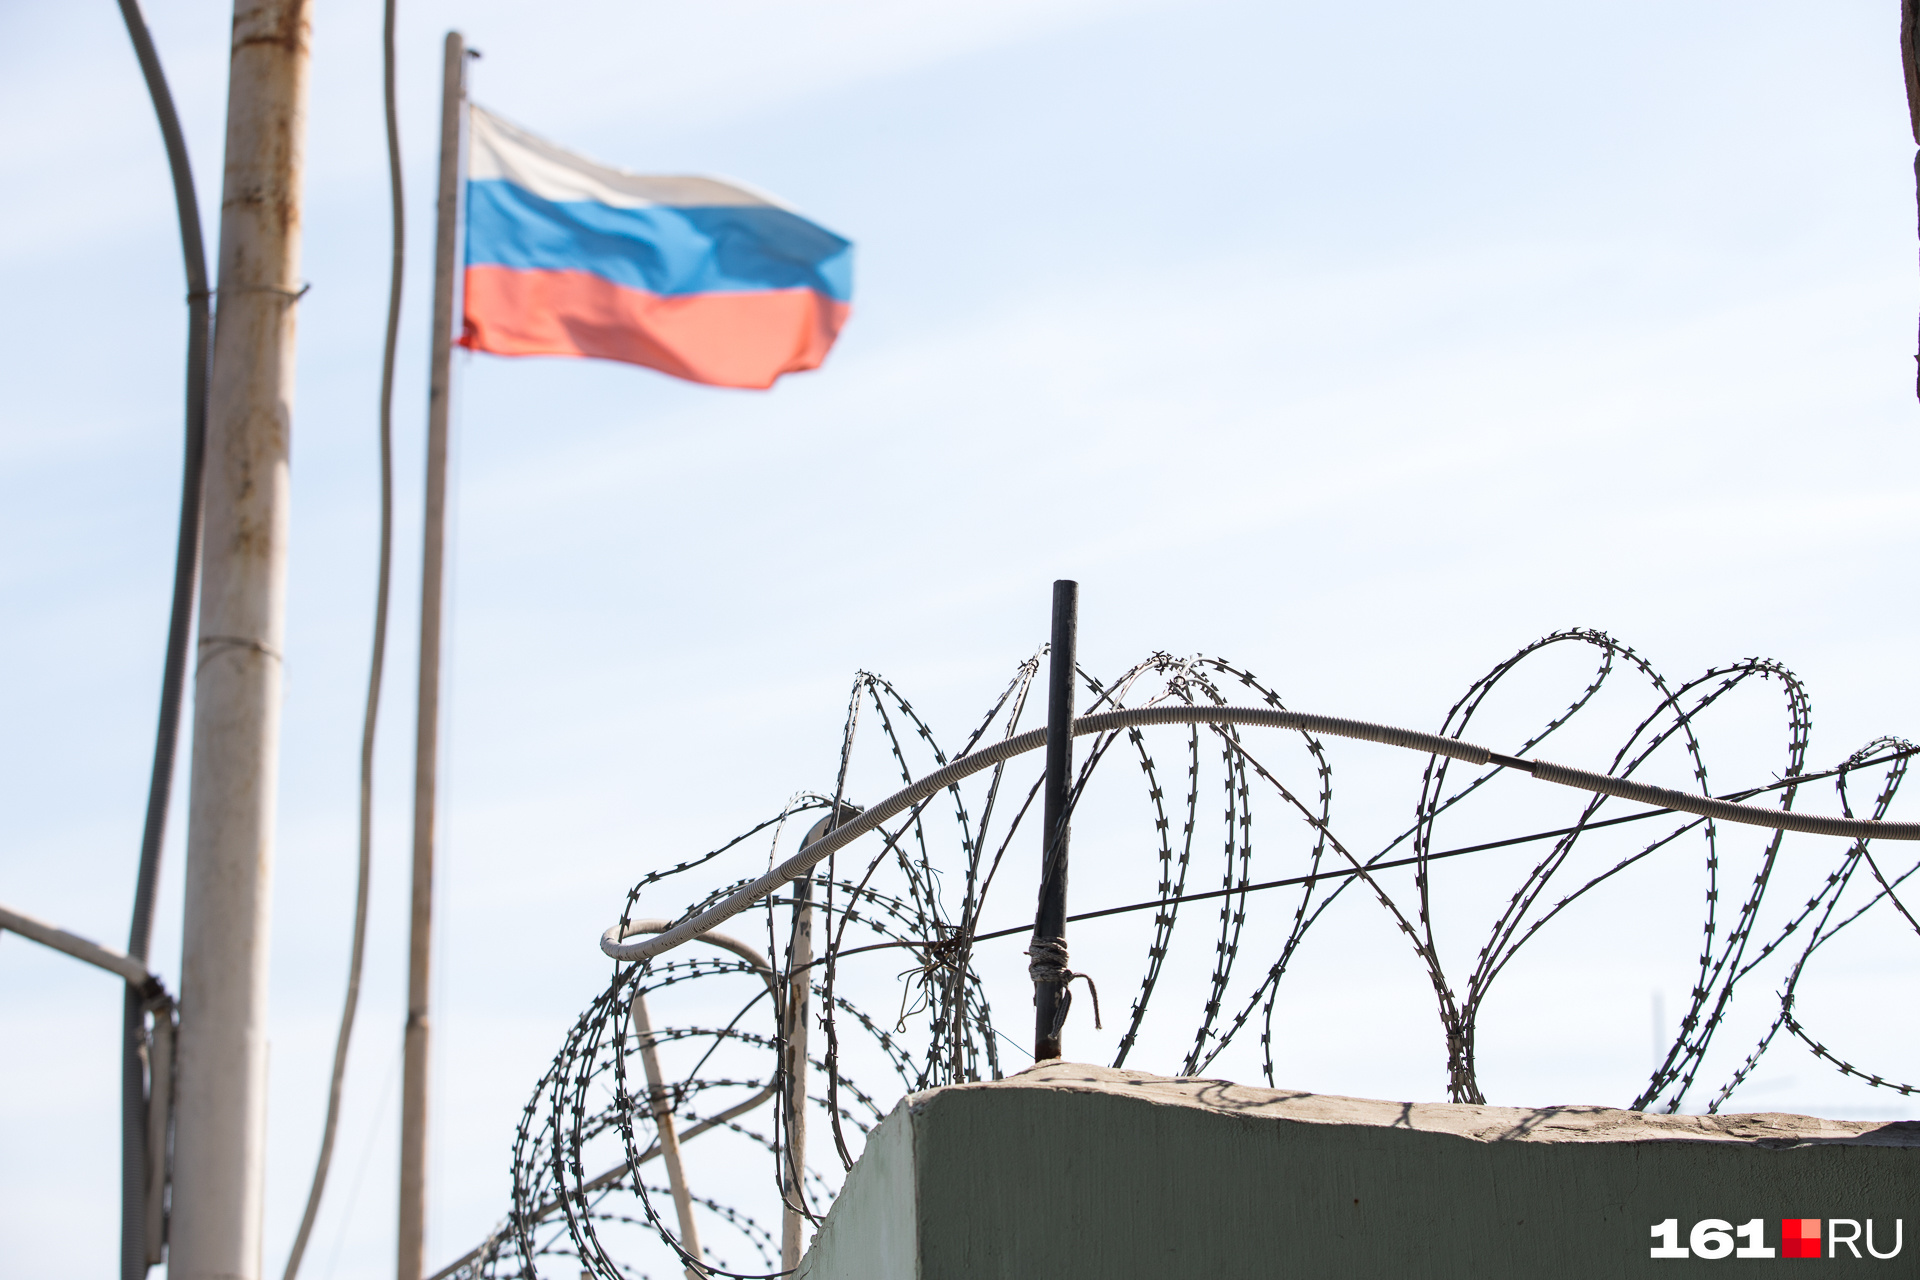 Уполномоченный по правам человека в Ростовской области сообщил, что не посещал колонии в связи с новостями о вербовке заключенных